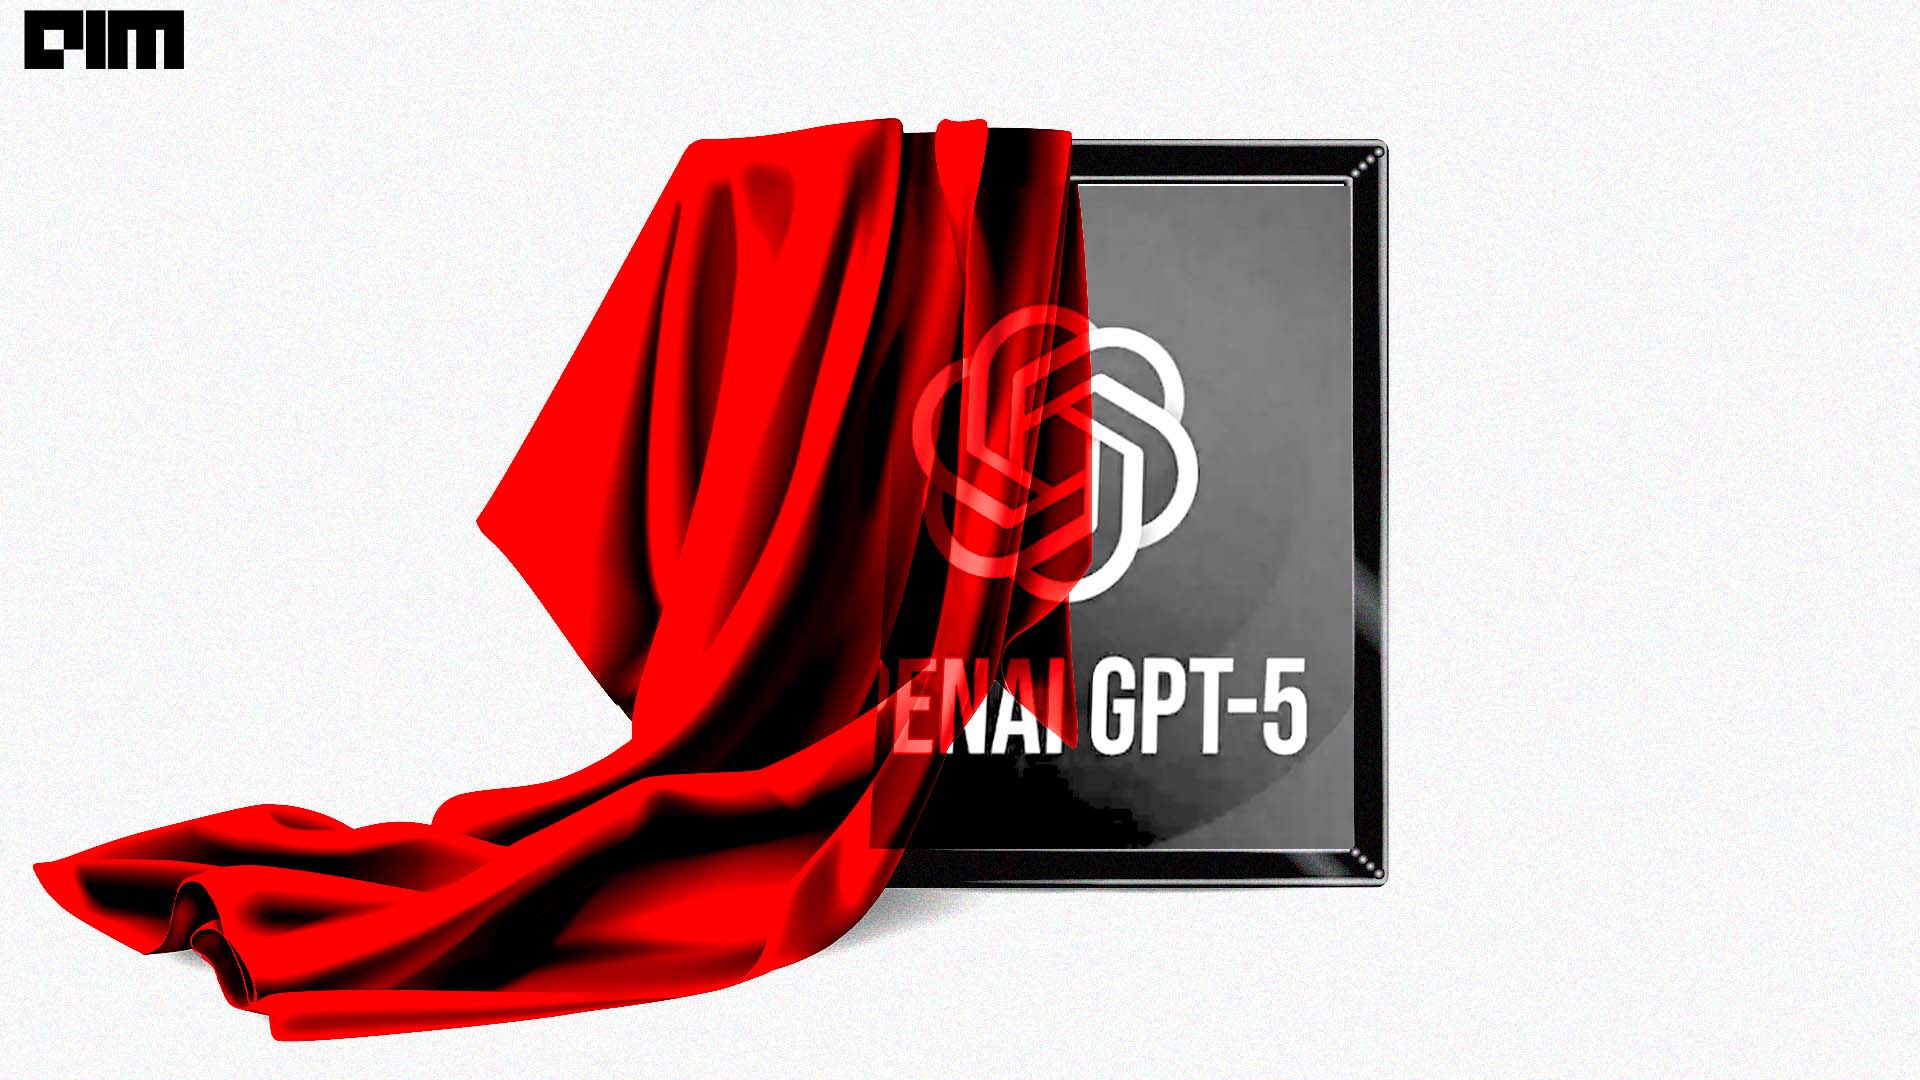 GPT-5